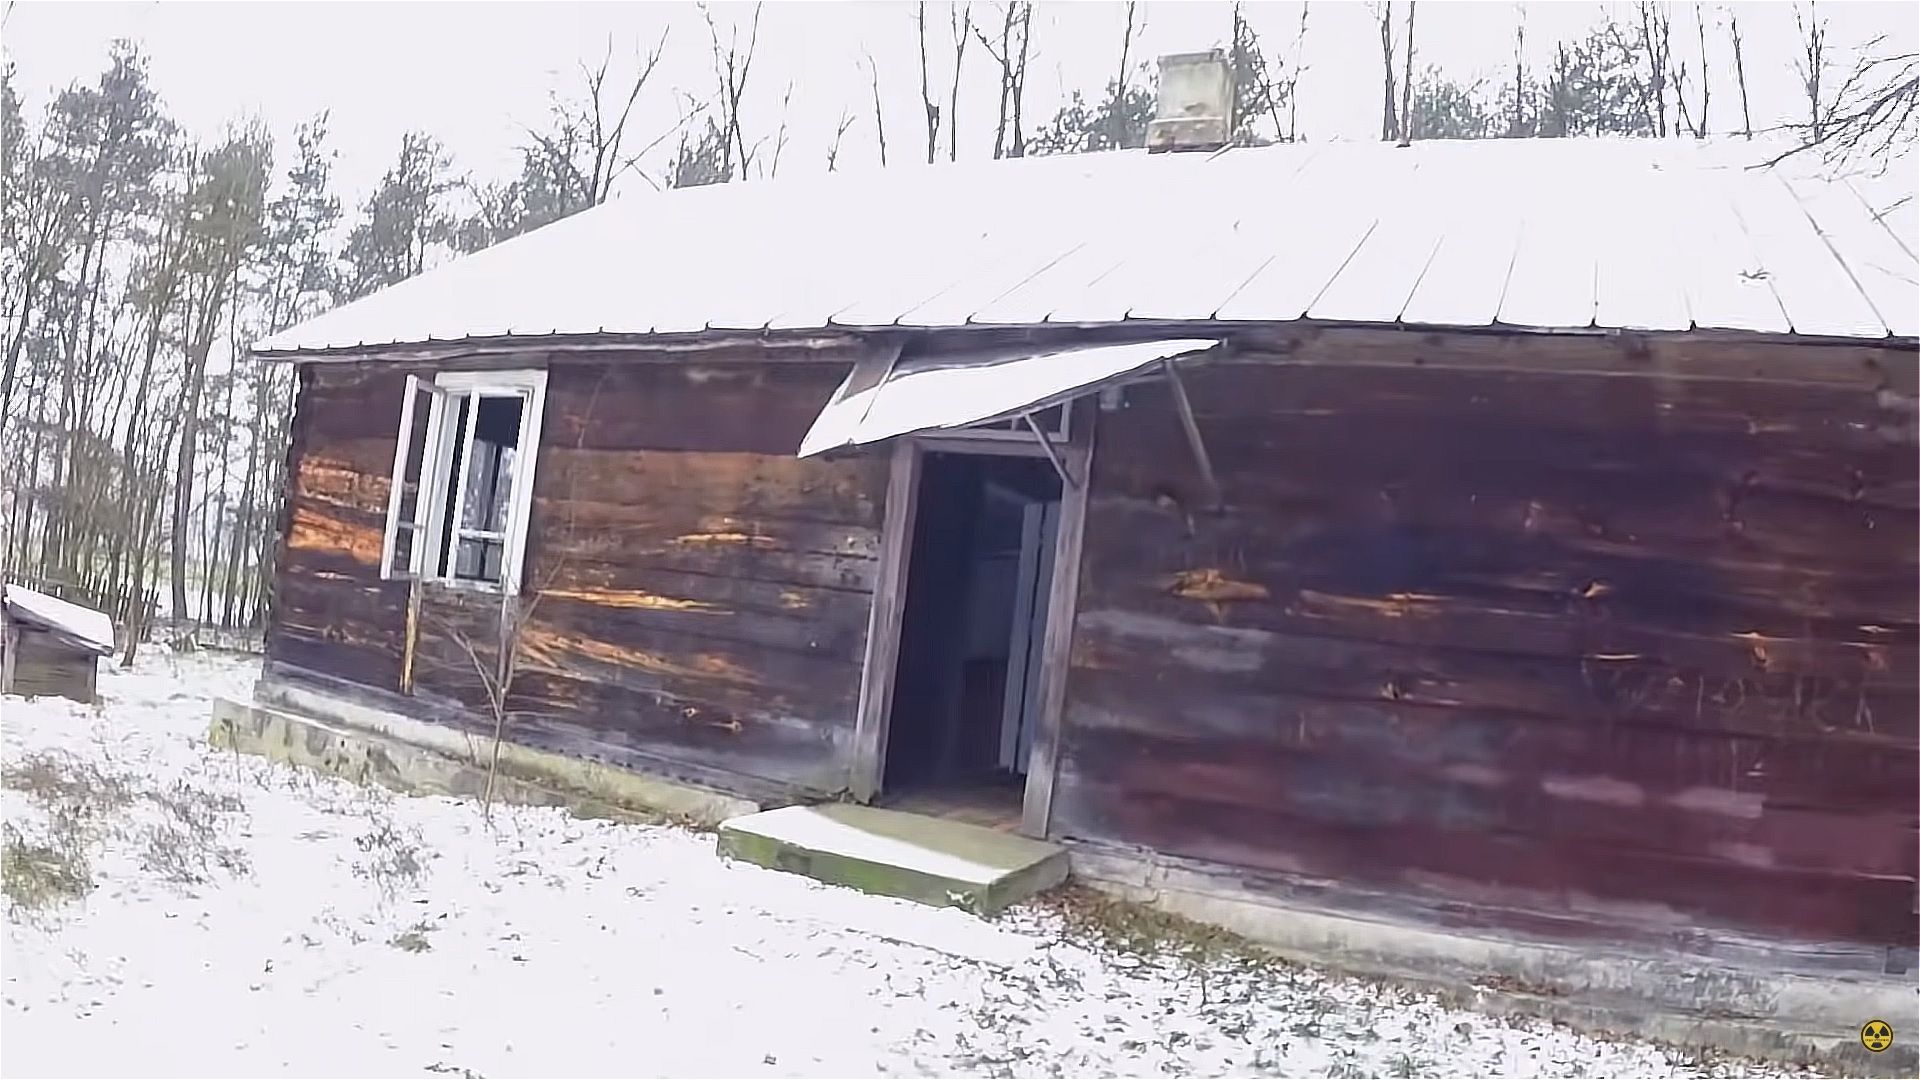 Kultowy dom z serialu Ranczo został zrównany z ziemią. Fot. kadry z kanały YouTube @Urban Explorers.jpg